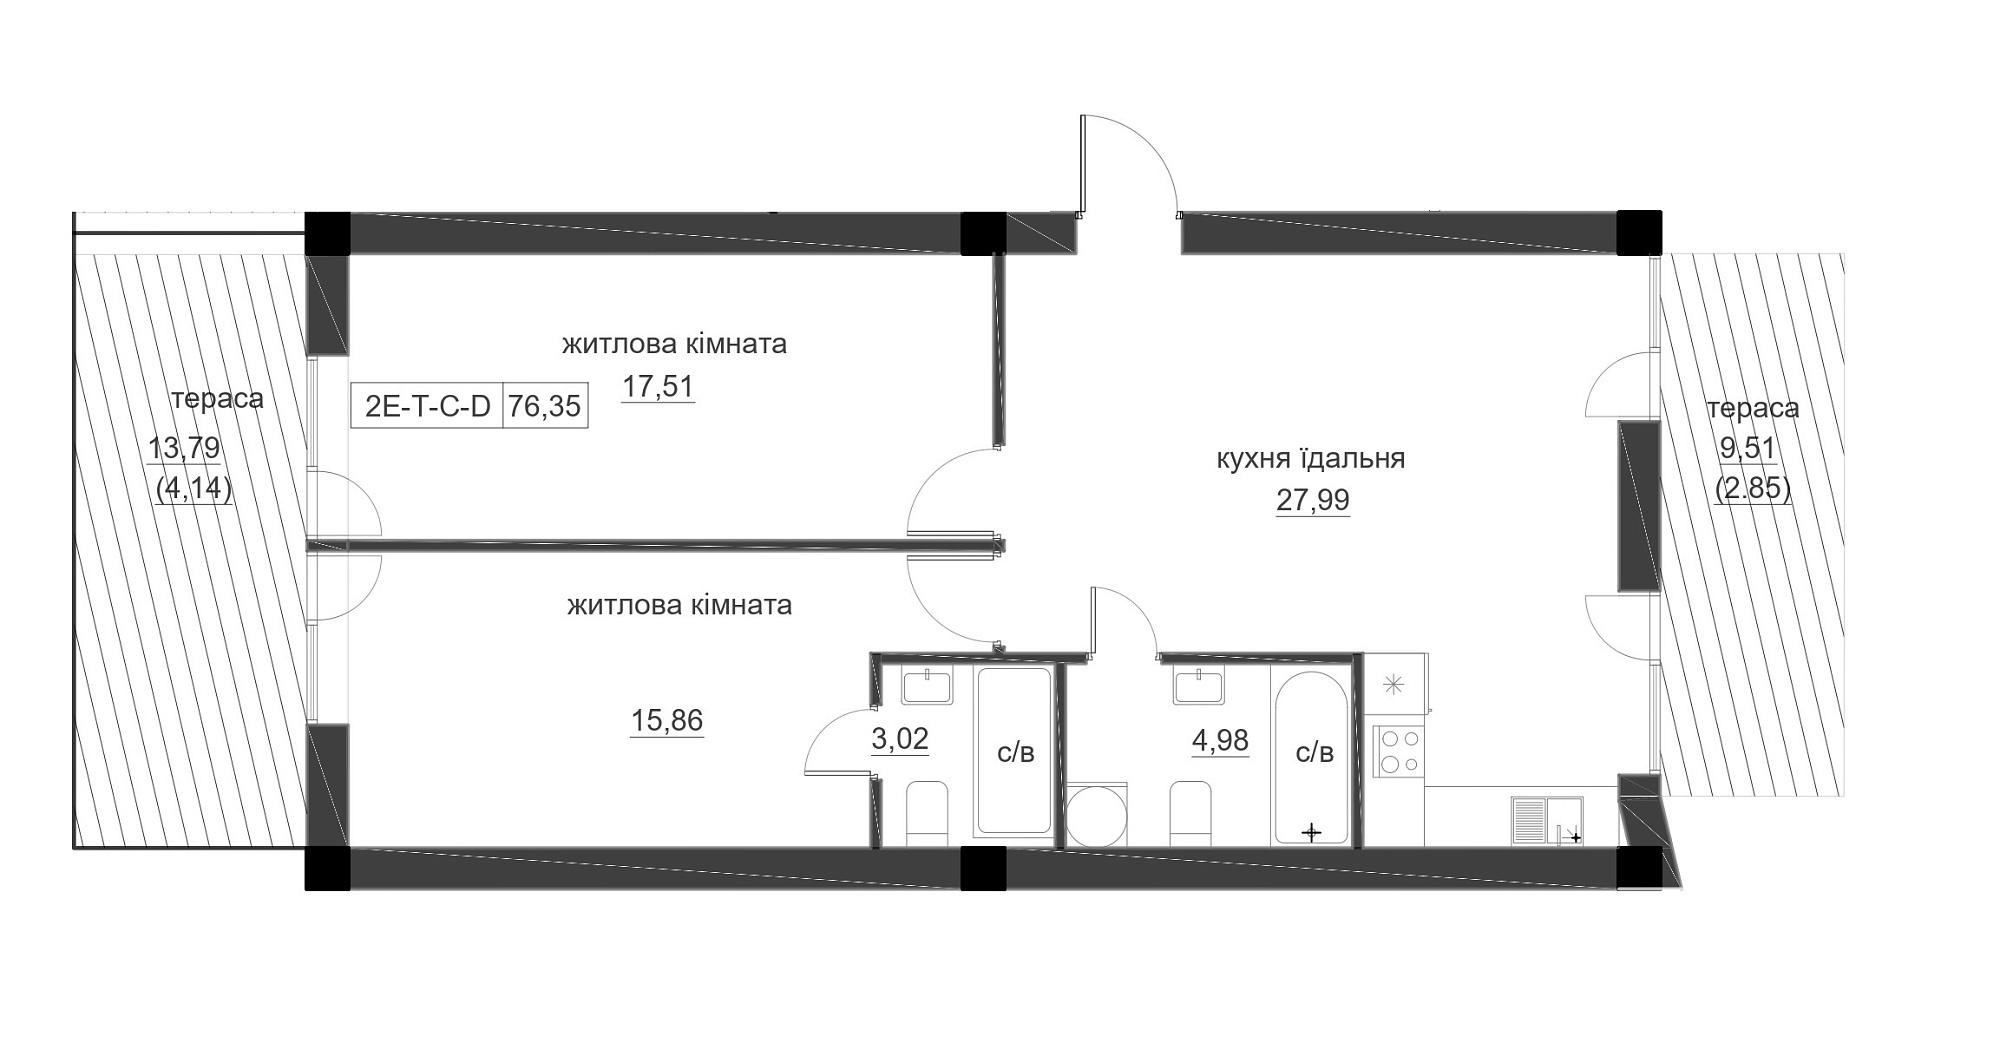 Планування 2-к квартира площею 76.35м2, LR-005-01/0002.